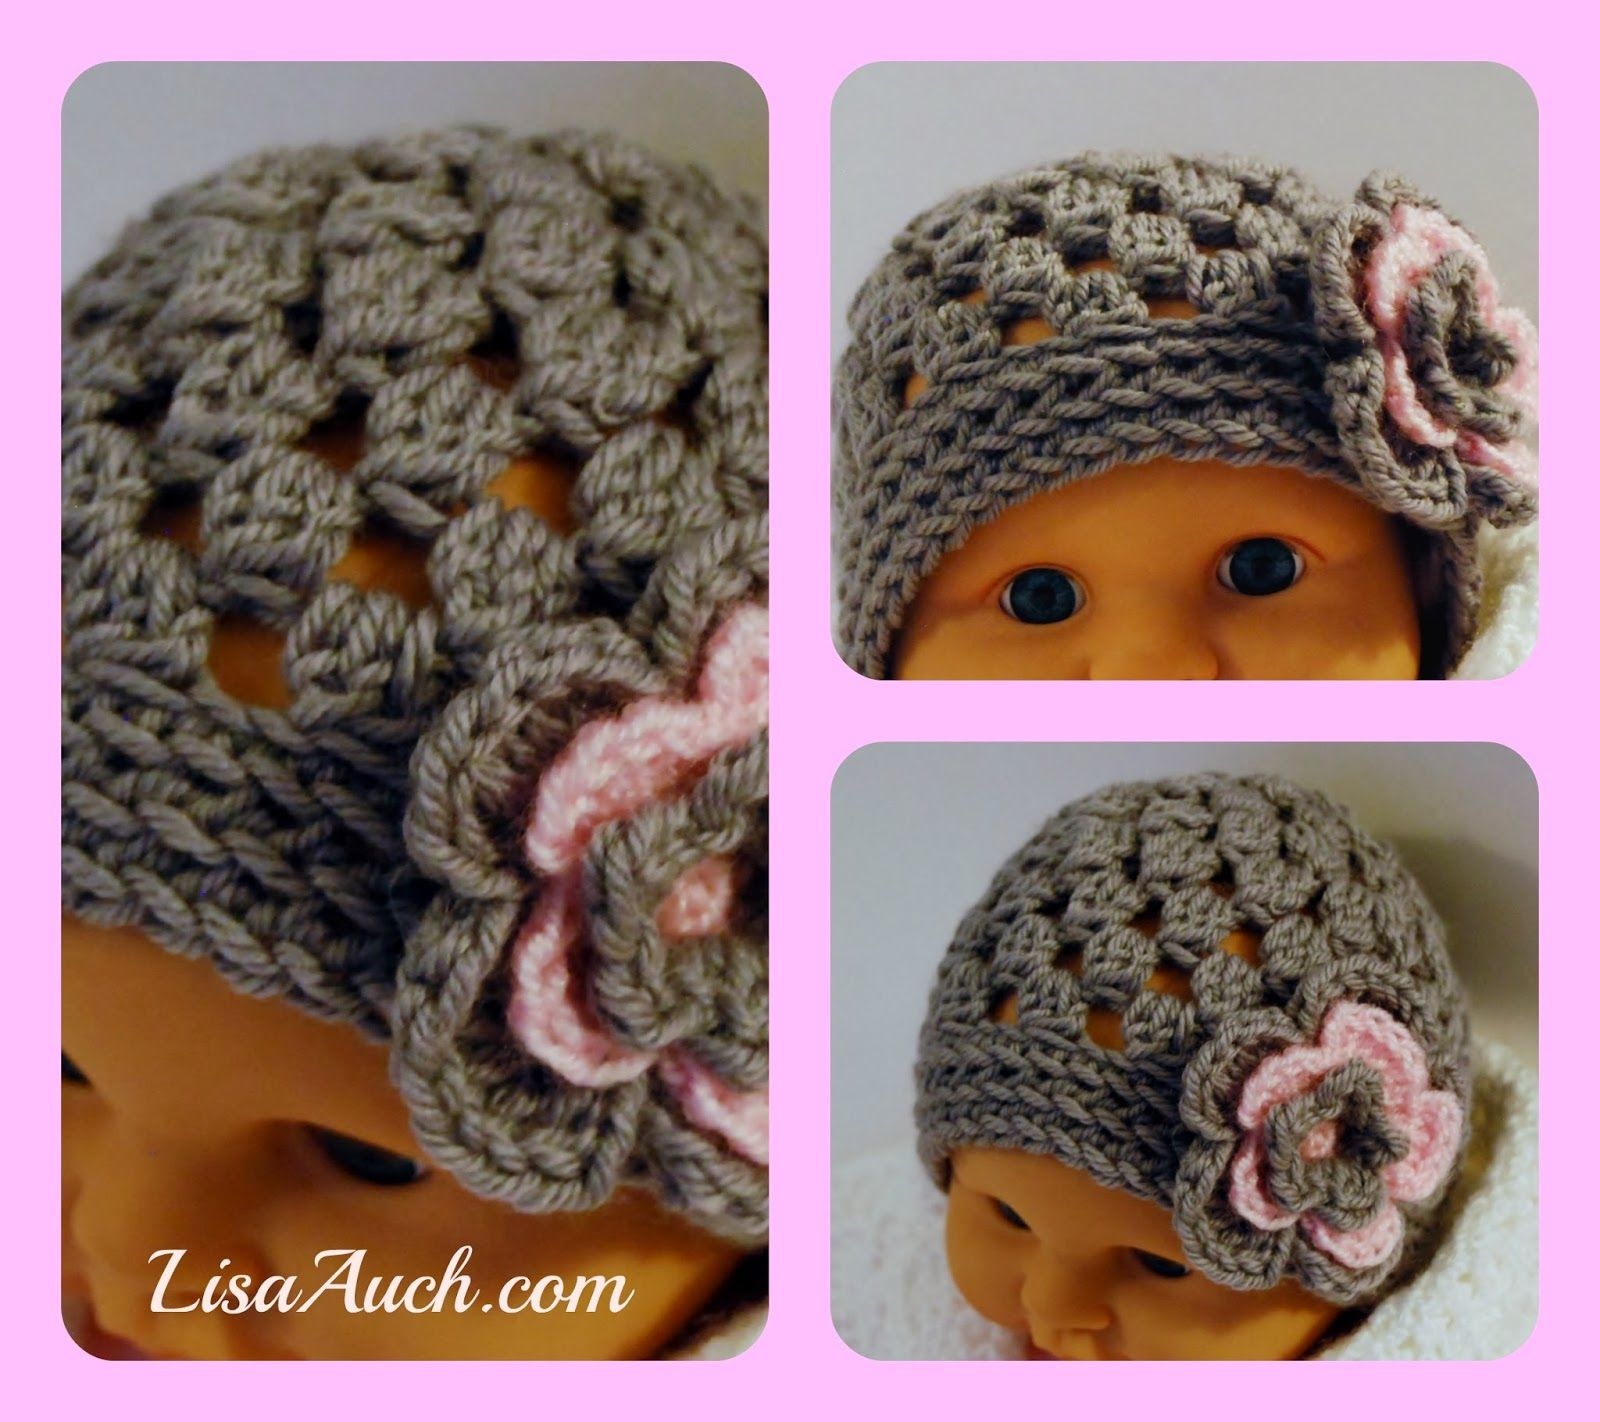 Crochet Patterns Baby Hats Free Crochet Pattern For A Cute Ba Hat Beanie With Crochet Flower